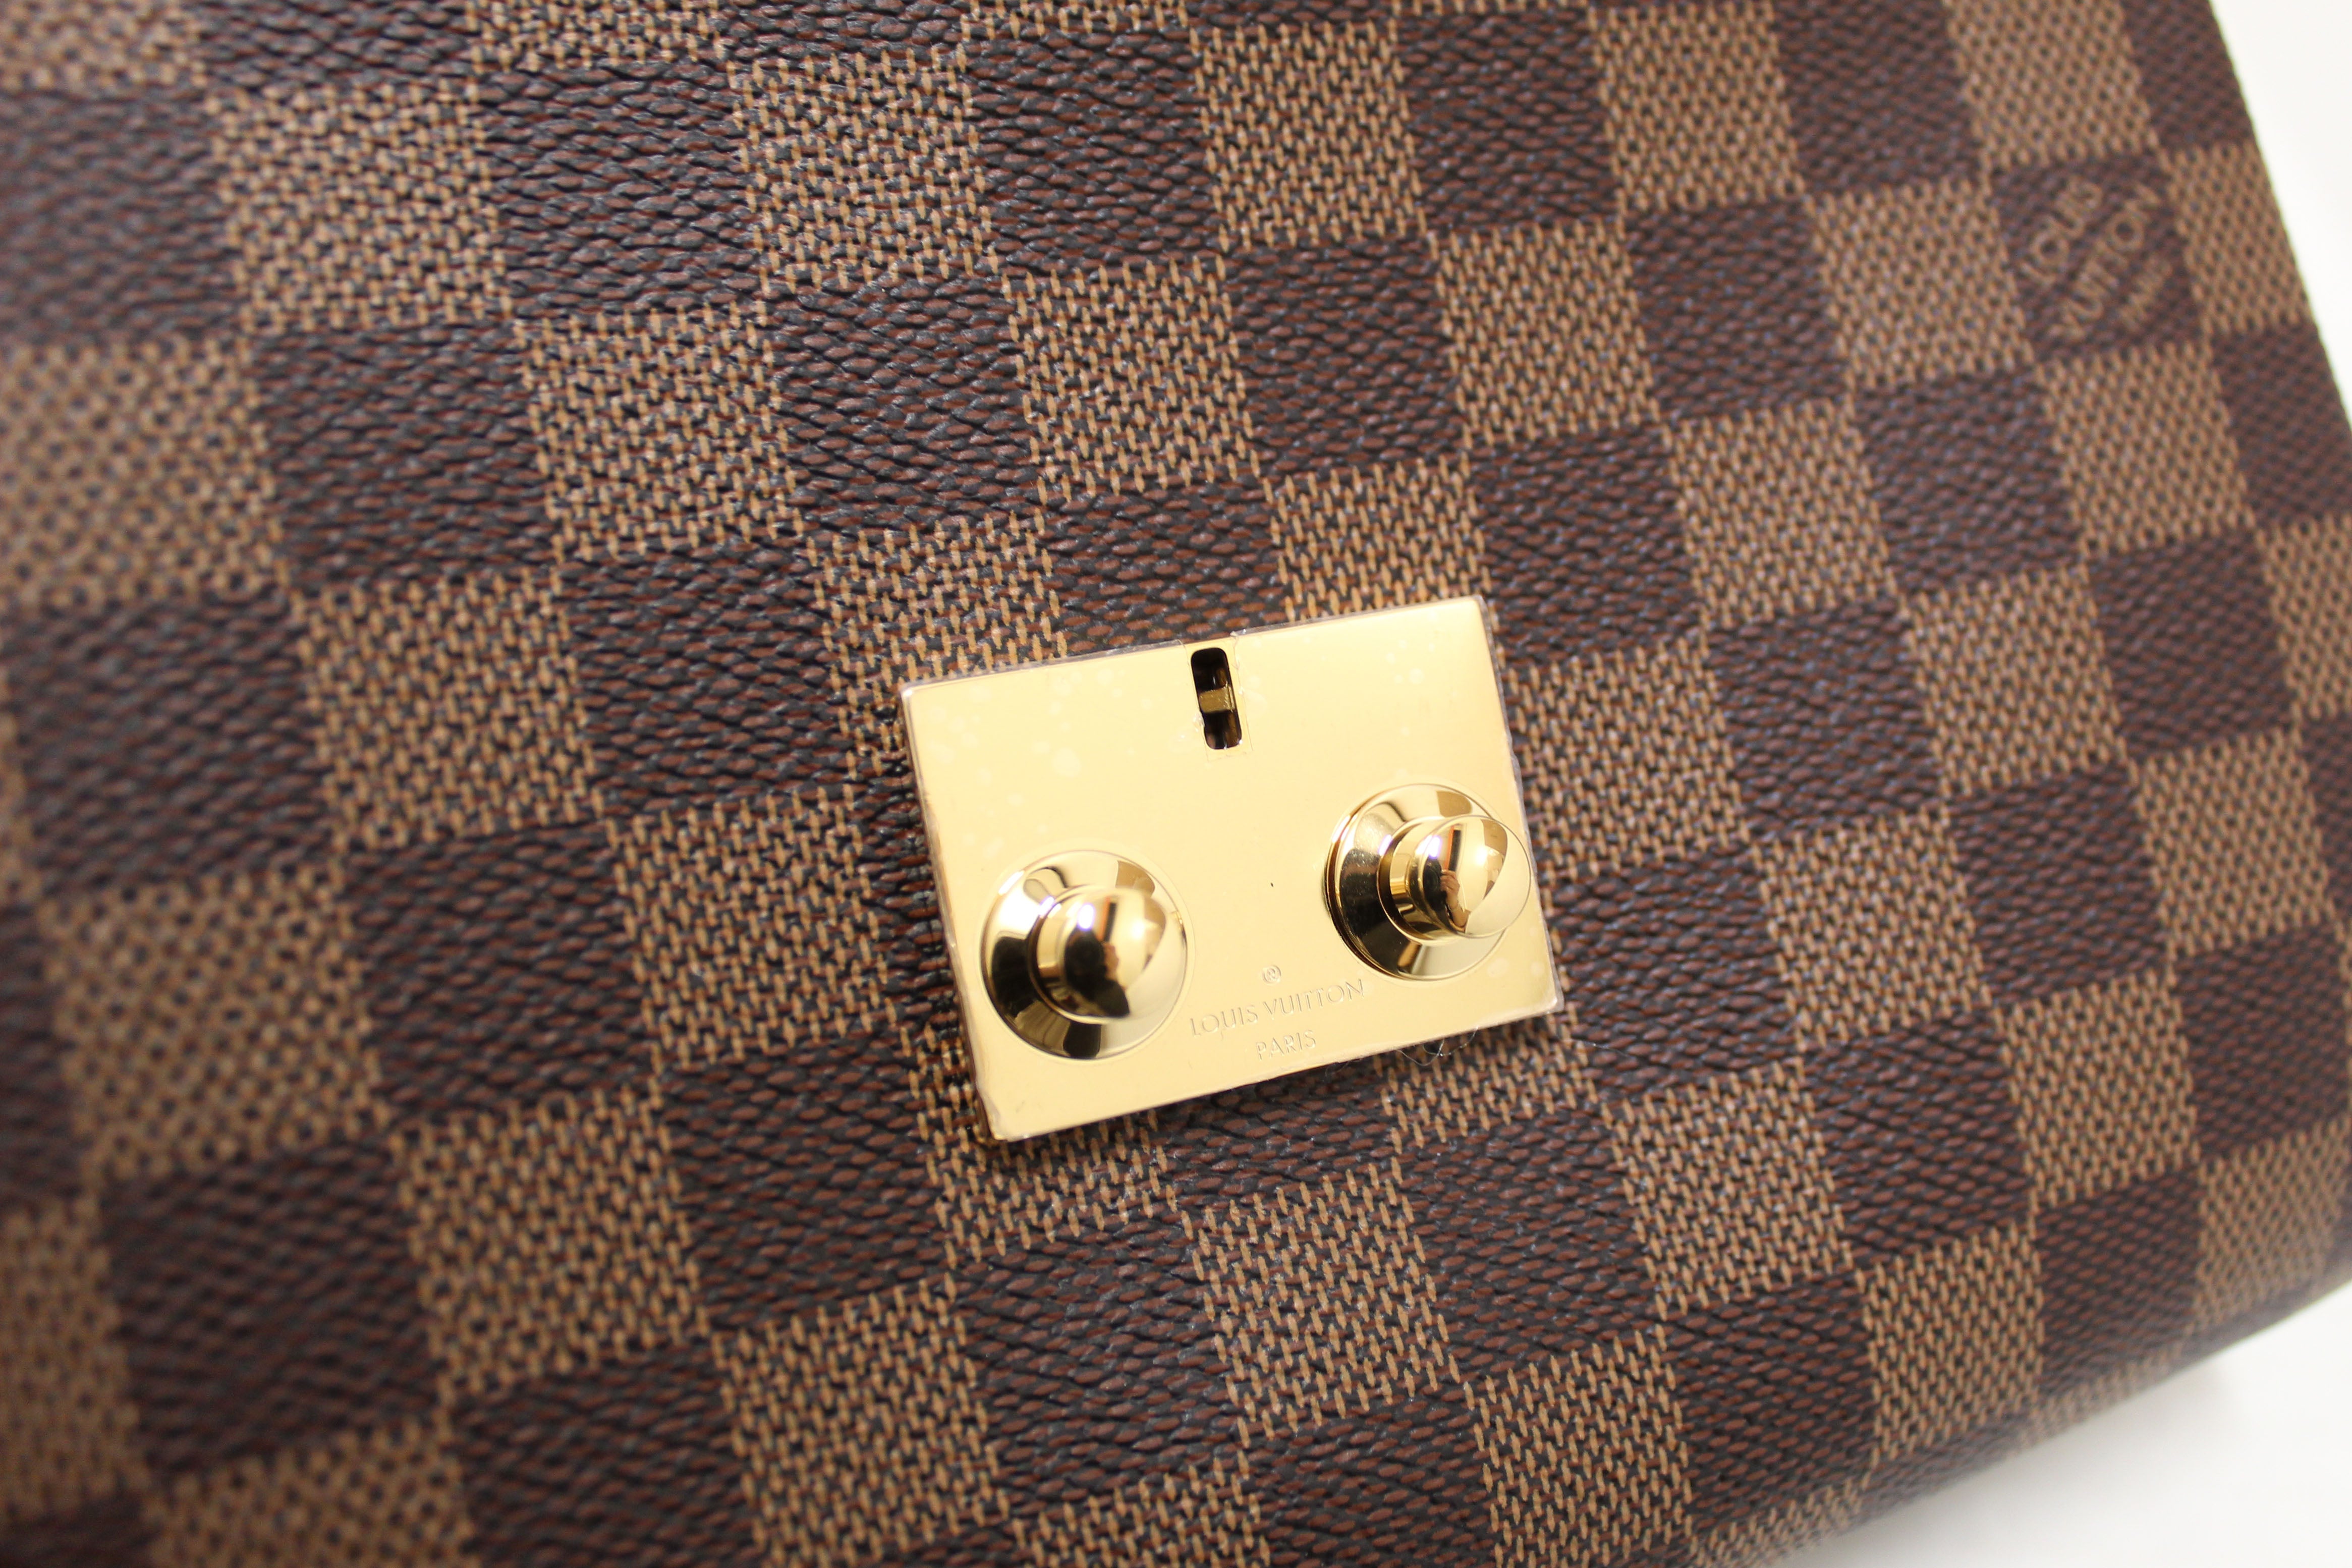 Authentic Louis Vuitton Damier Ebene Croisette Handbag/Messenger Bag